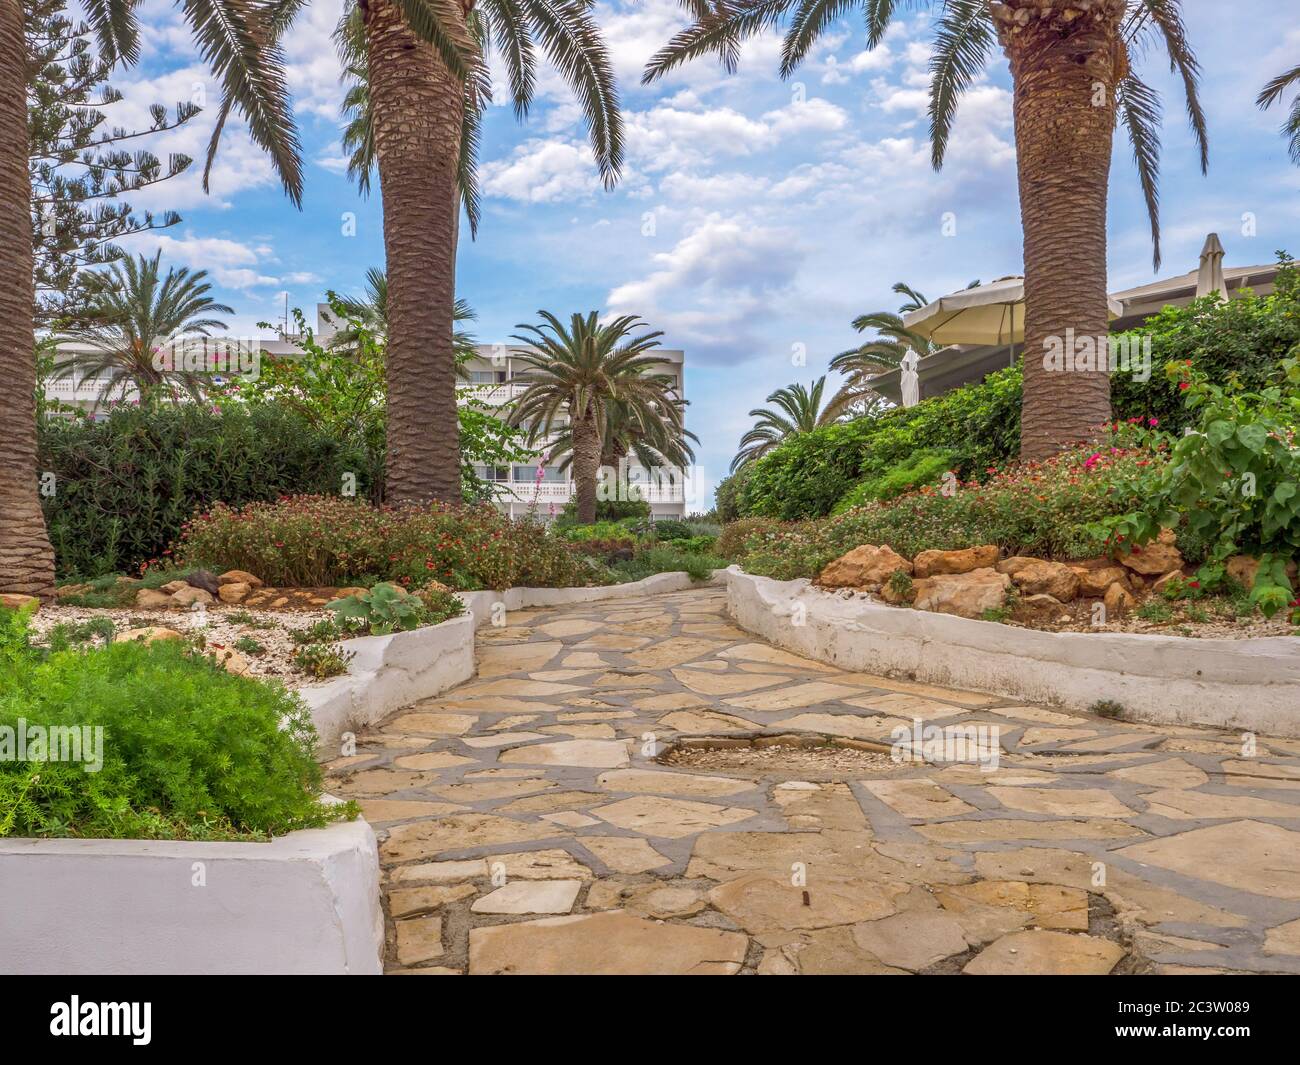 Pfad gepflastert mit felsigen Fliesen führt vom Mittelmeer und Nissi Strand zu weißen Gebäude eines Hotels. Palmen, Geen Büsche und rote Blumen. Stockfoto